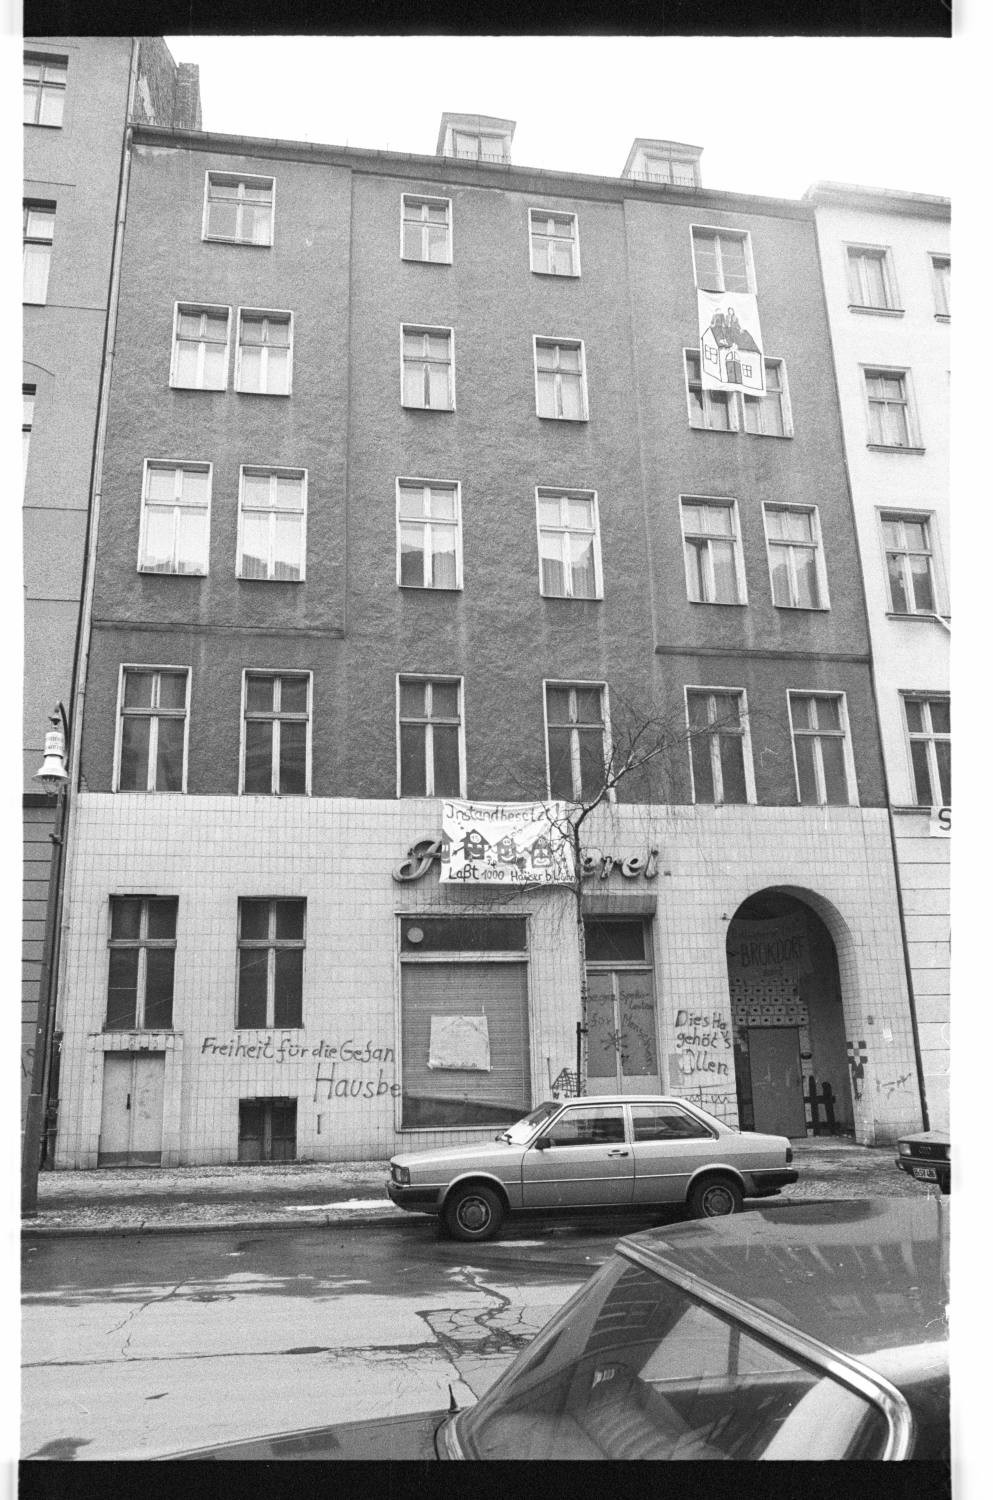 Kleinbildnegative: Besetzte Häuser, Blumenthalstr. 15, 14 und 13, 1981 (Museen Tempelhof-Schöneberg/Jürgen Henschel RR-F)